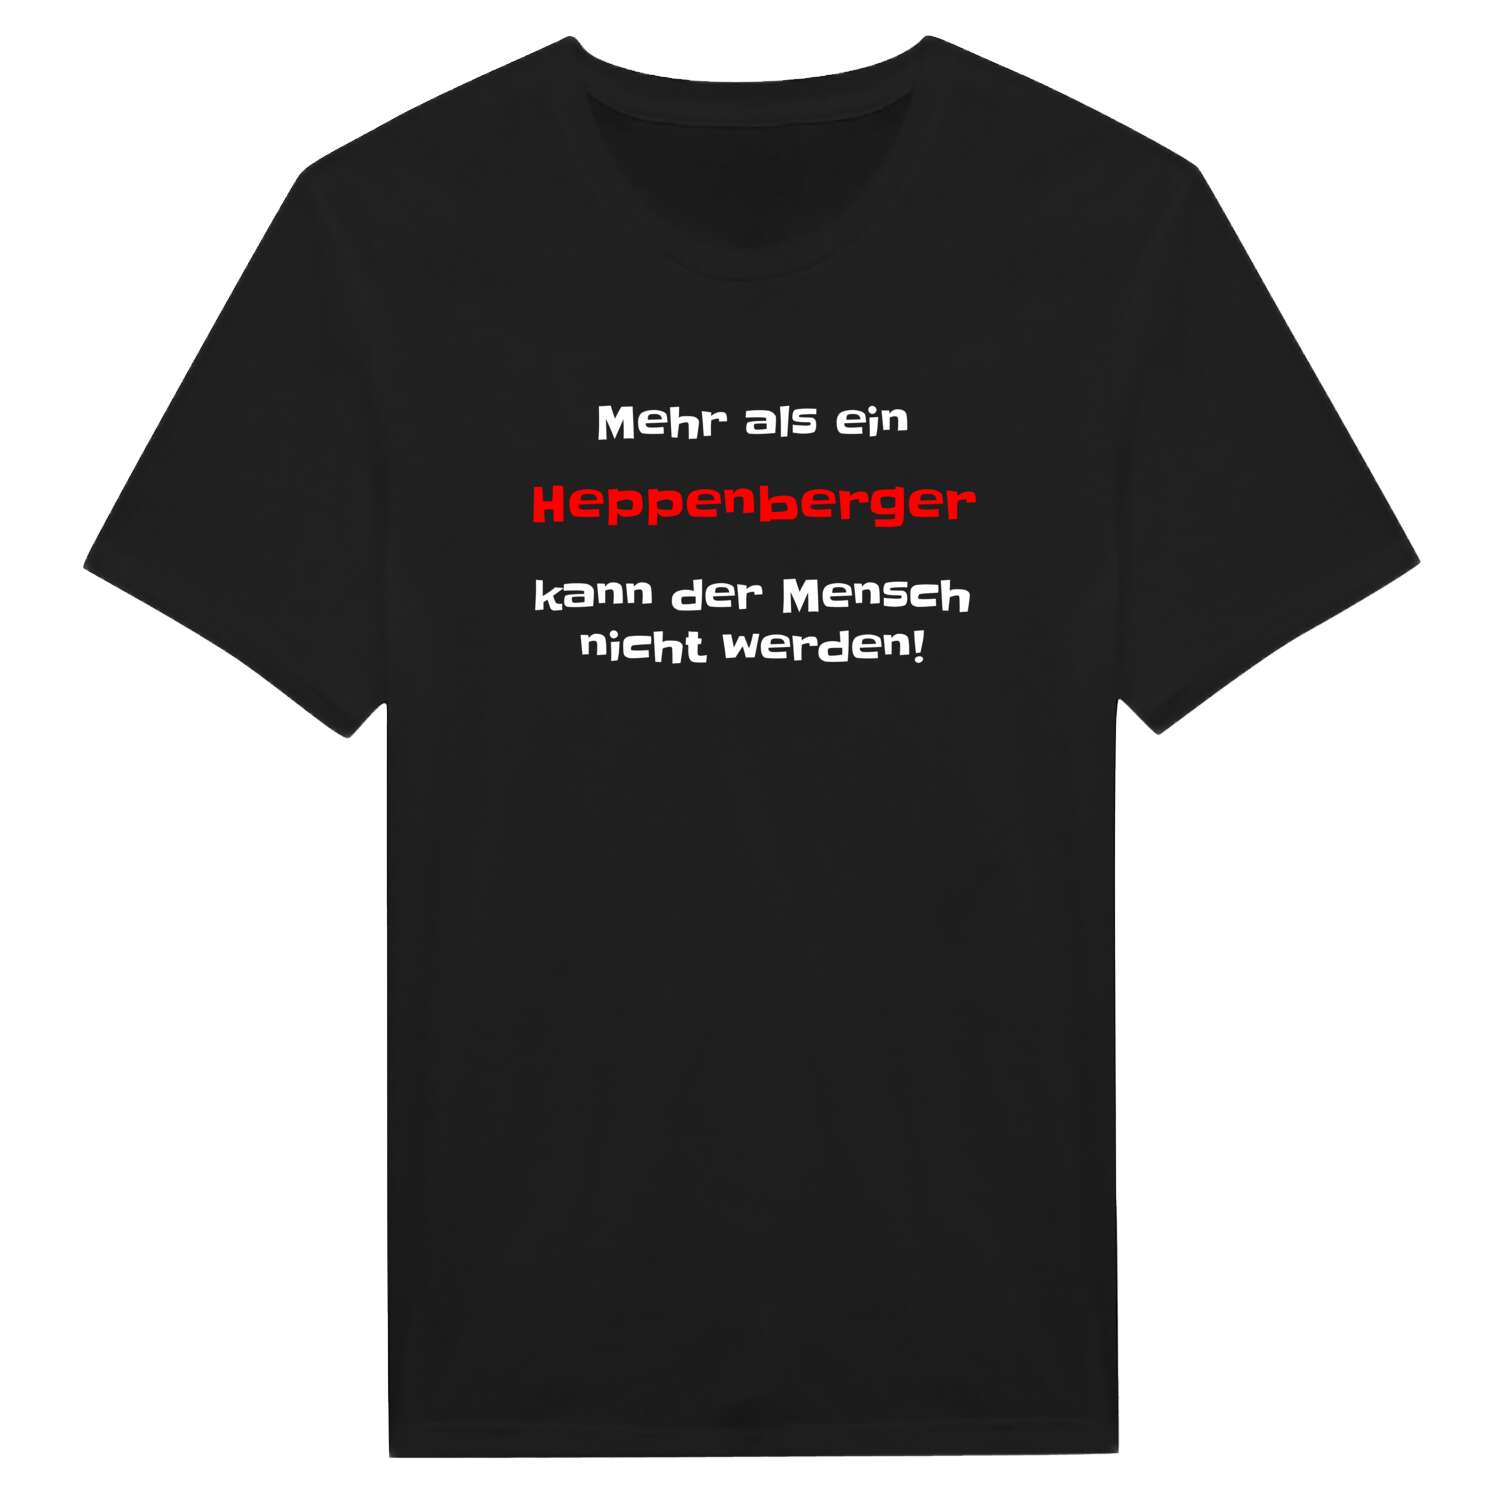 Heppenberg T-Shirt »Mehr als ein«